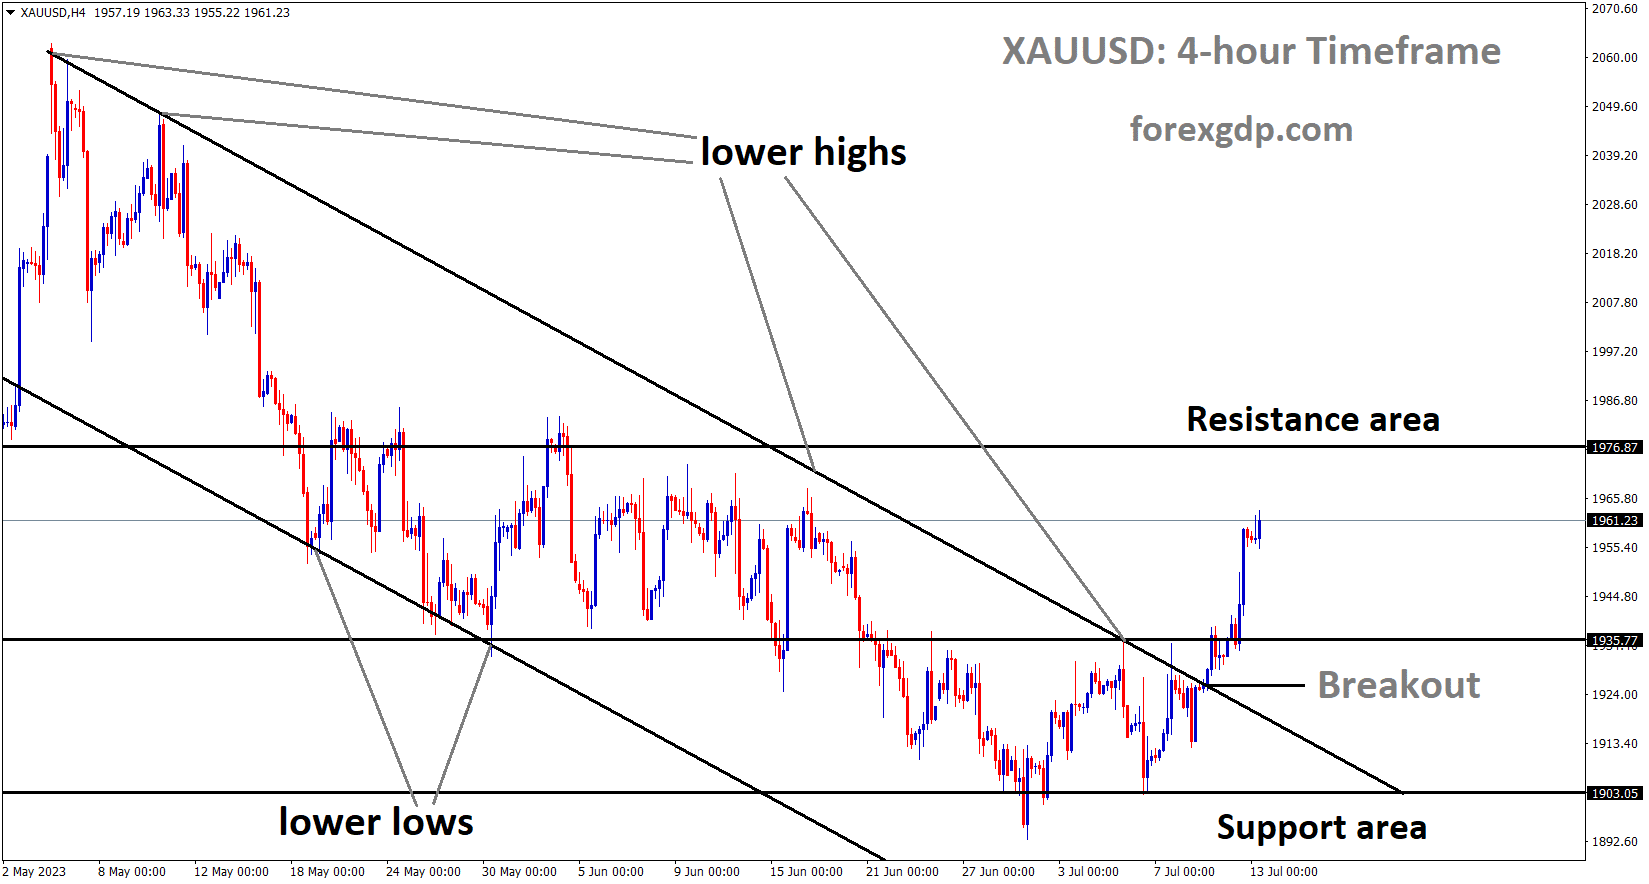 XAUUSD Gold price has broken the Descending channel in upside. 1